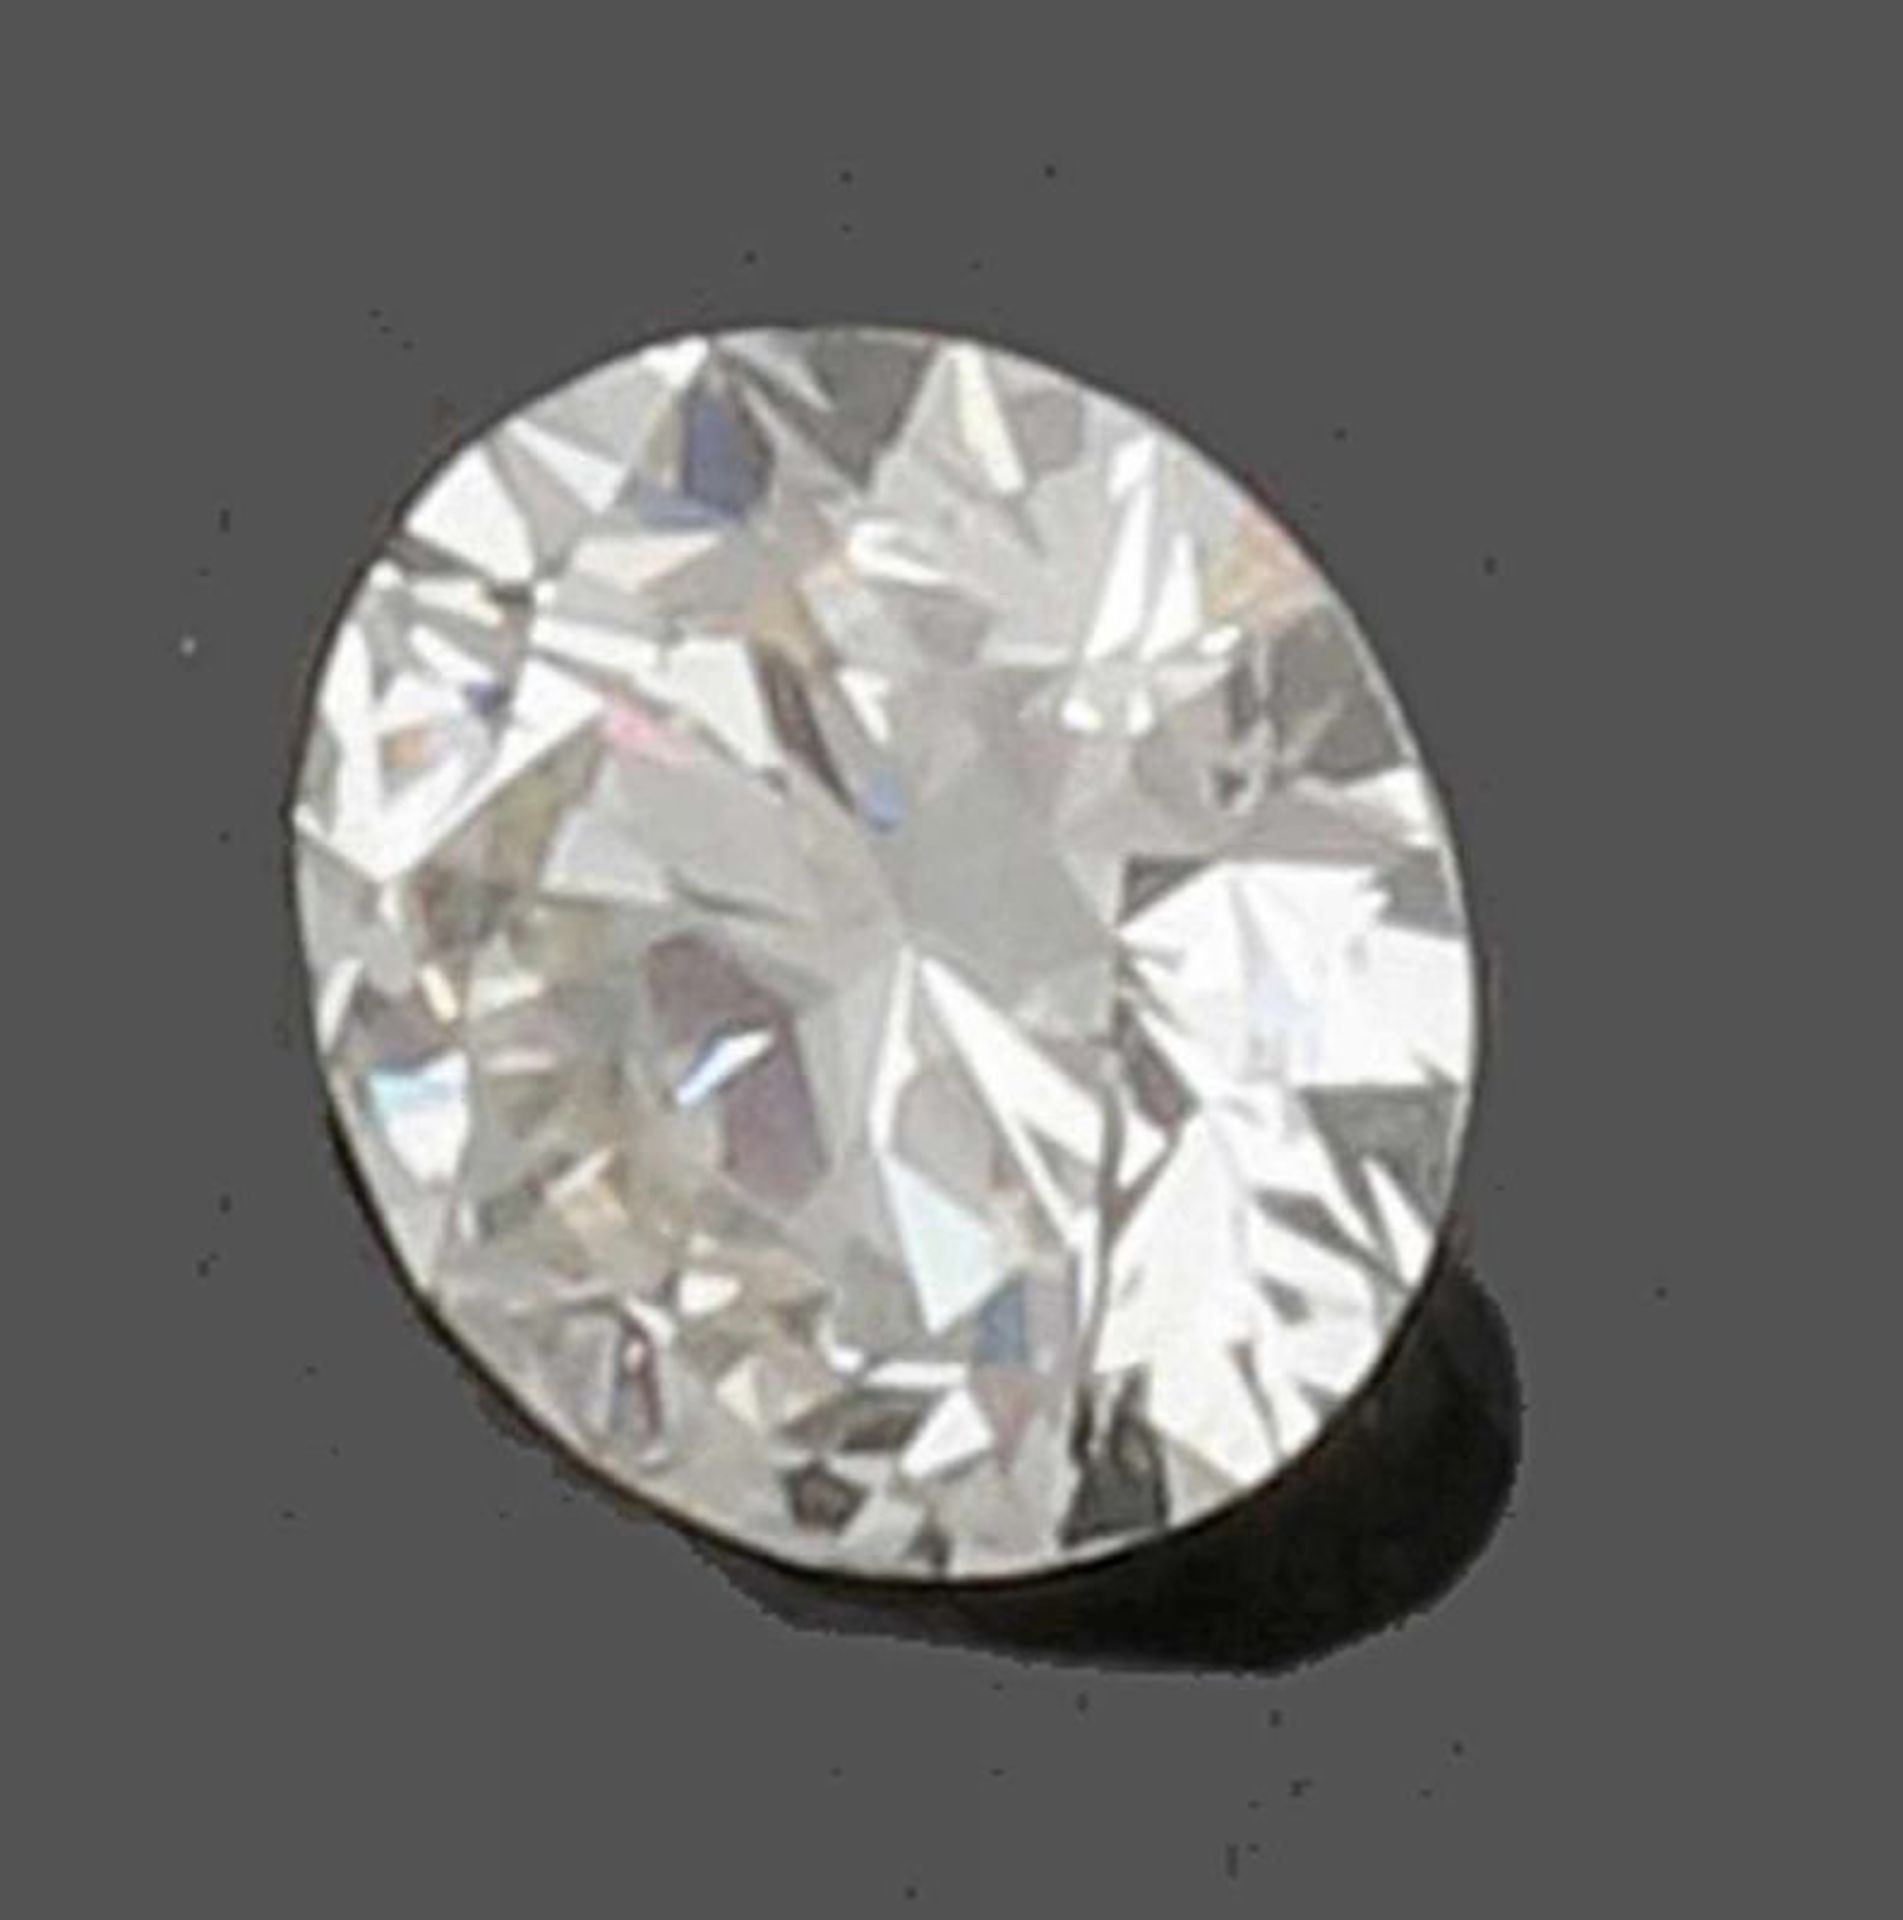 Ein loser Brillant von 1,93 ct. An unmounted brilliant-cut diamond 1.93 ct. 1 Brillant von 1,93 - Bild 2 aus 2